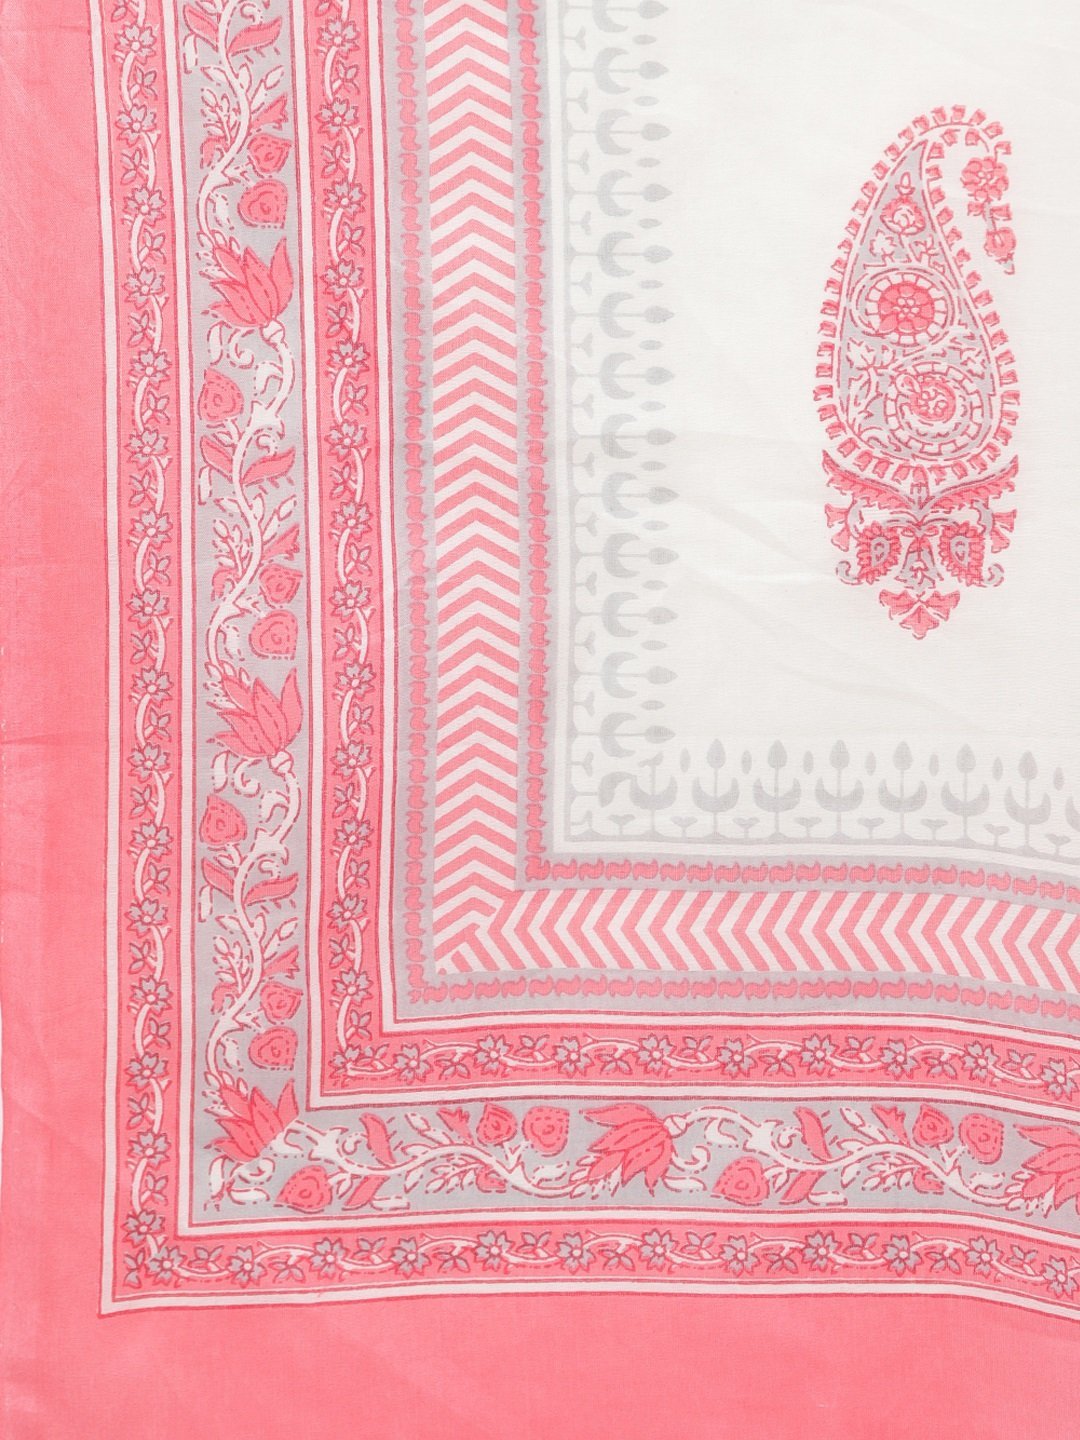 Women's Pink Printed 3/4 Sleeve Cotton Square Neck Kurta Pant & Dupatta Set - Myshka